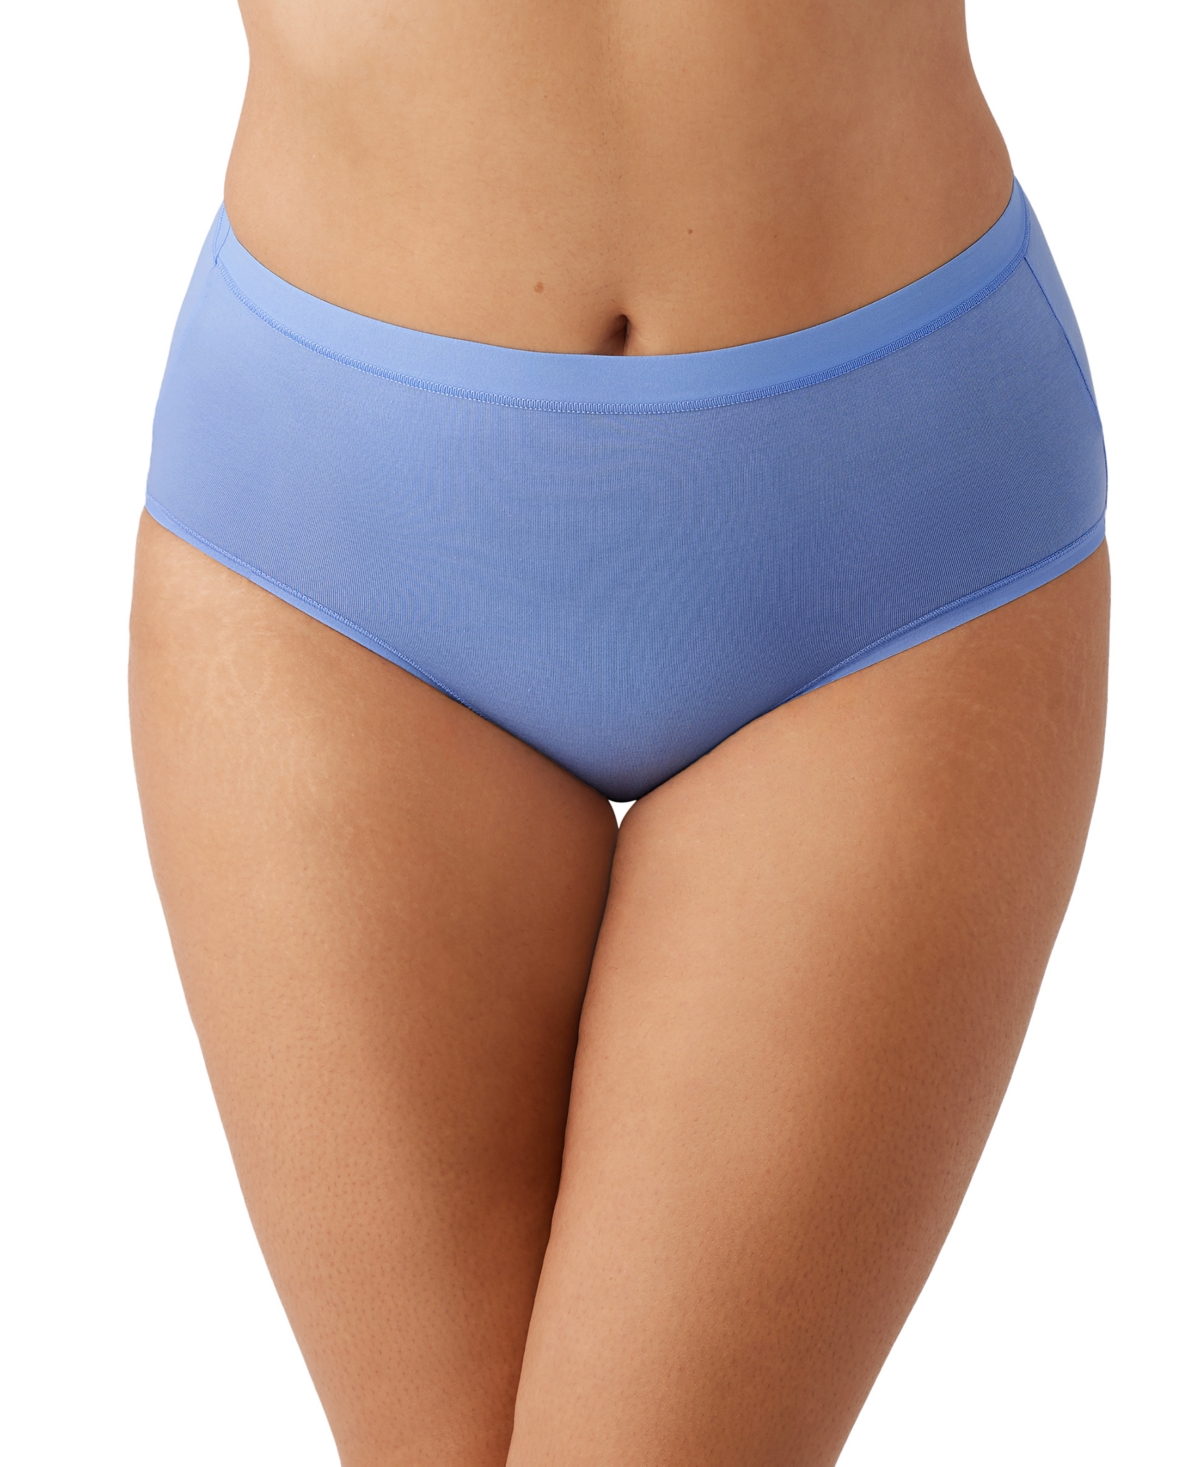 Wacoal Women's Understated Cotton Hi-cut Underwear 879362 In Blue Hydra